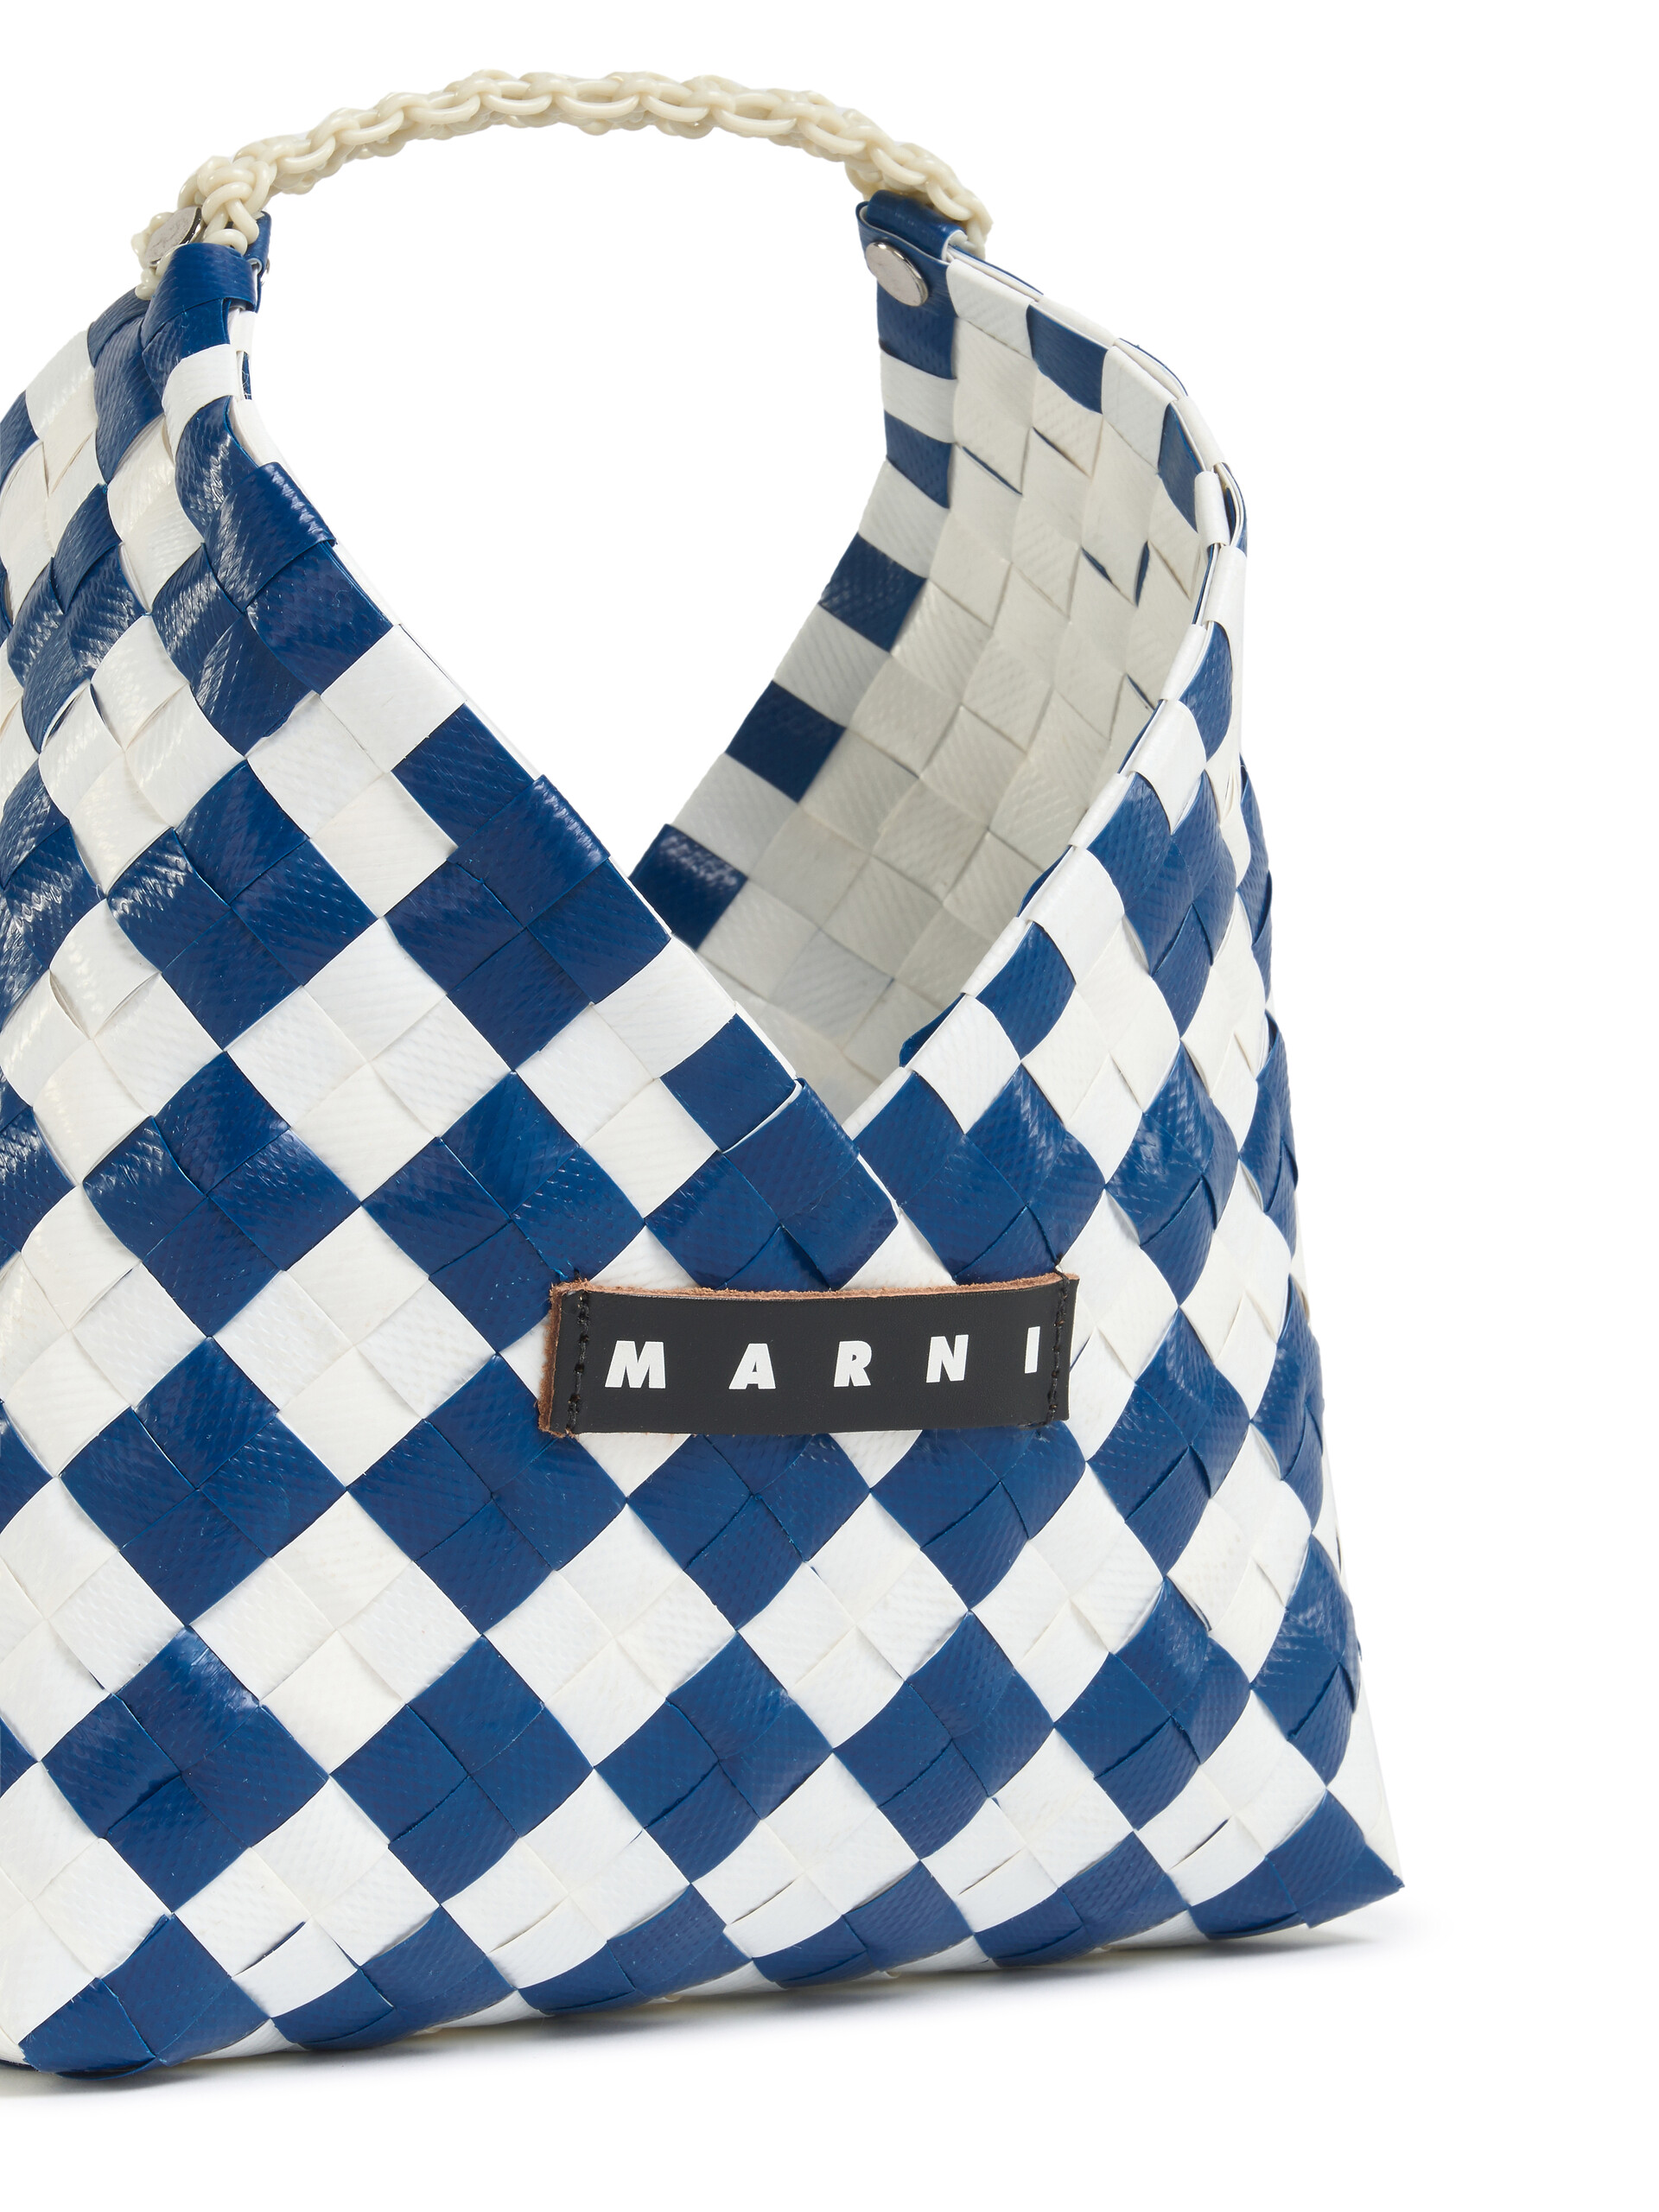 ツートーン ブルー ウーブン MARNI MARKET GARDEN BAG - ショッピングバッグ - Image 4